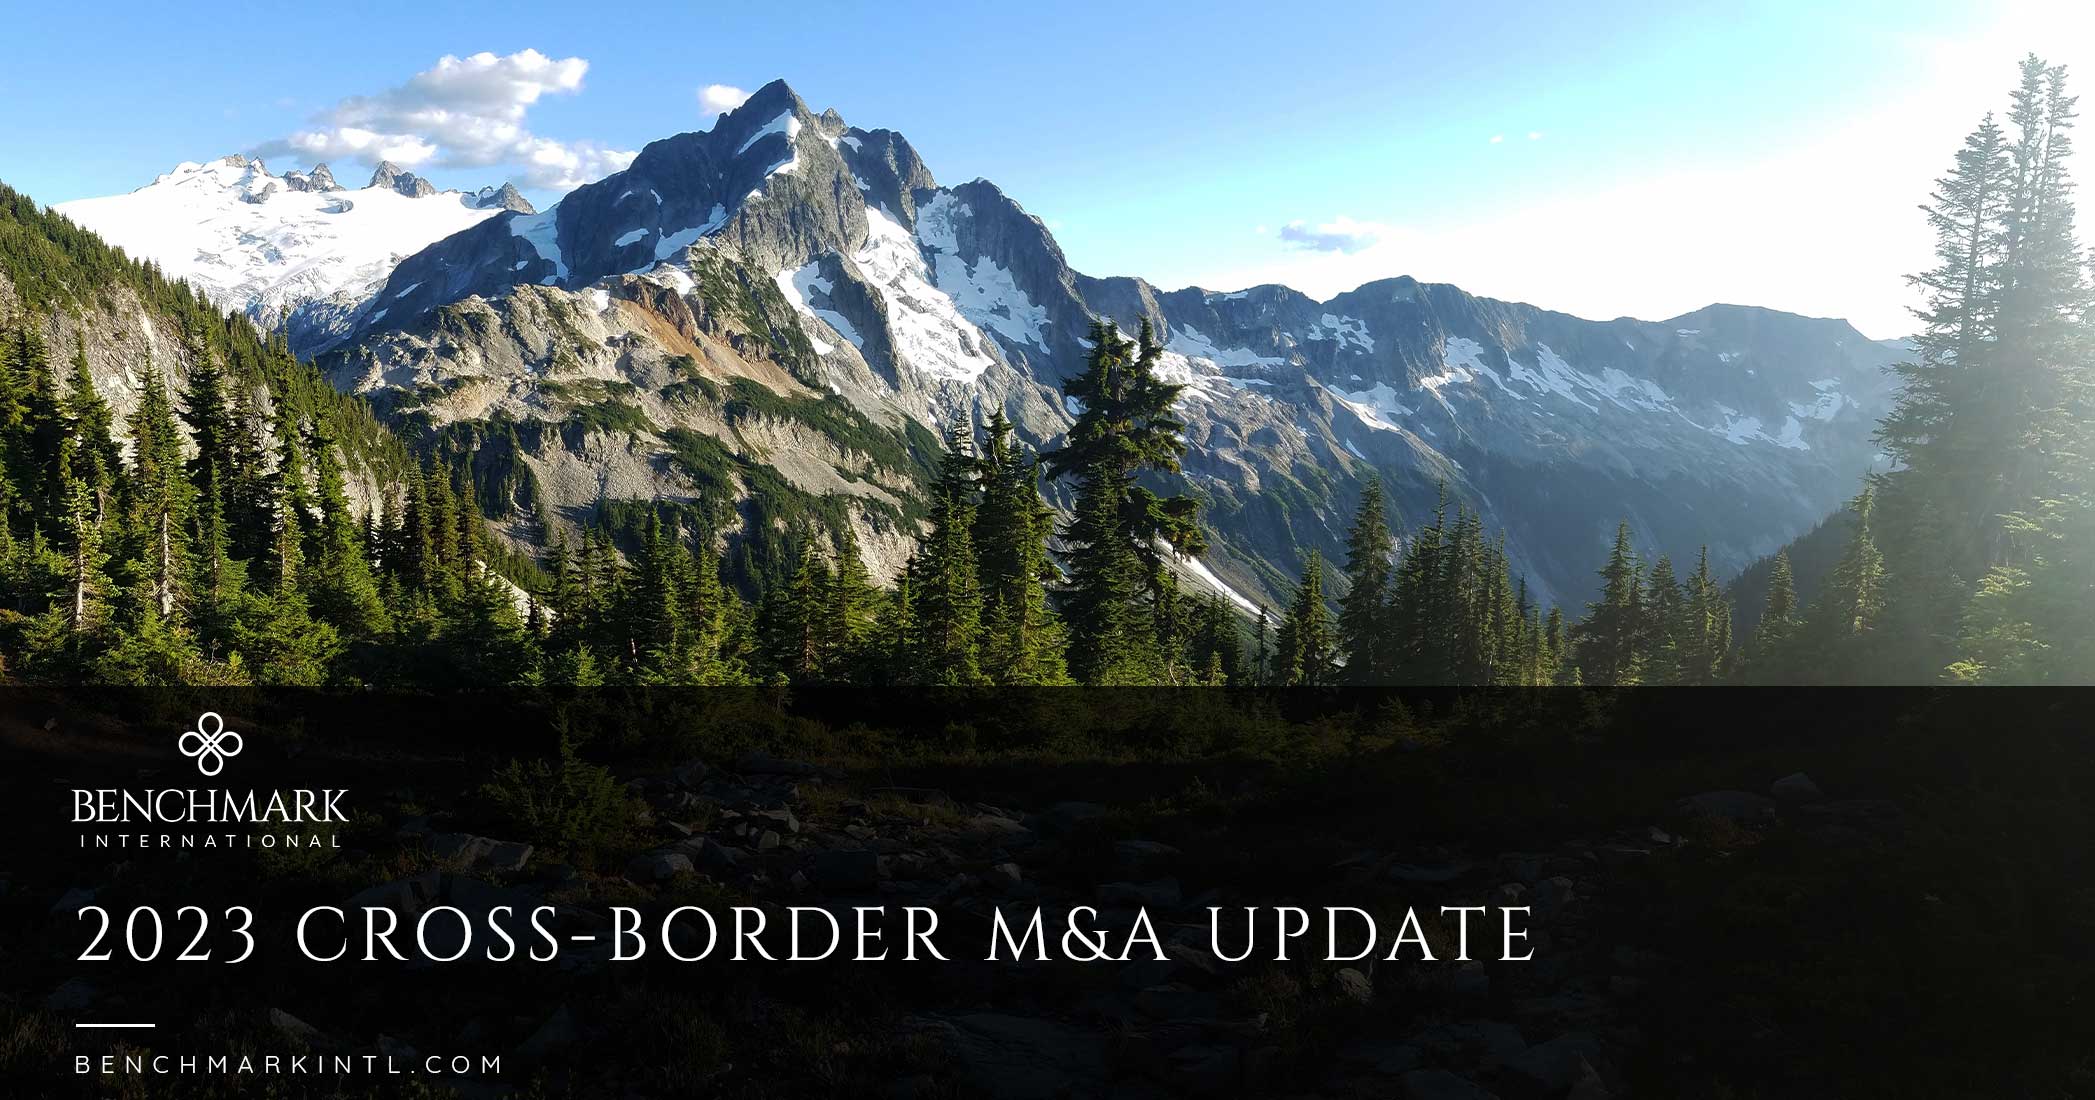 2023 Cross-border M&A Update